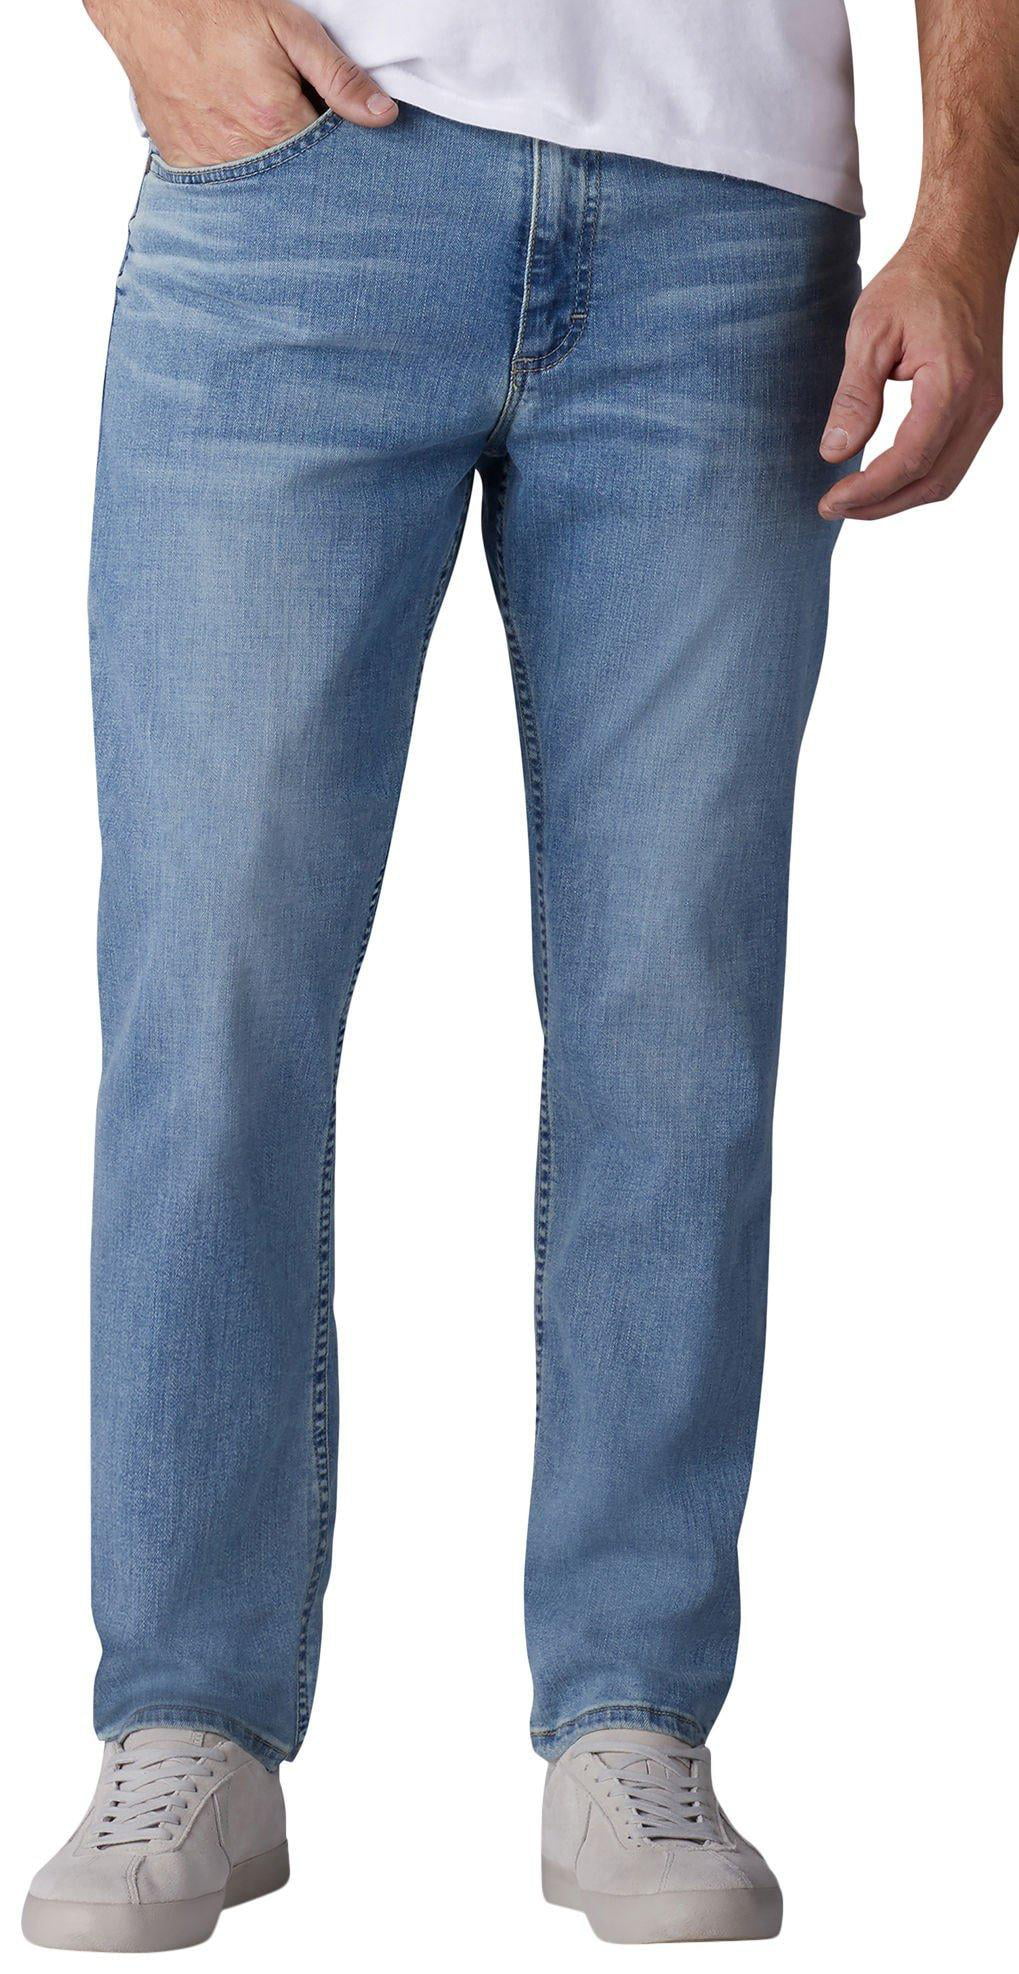 white kick crop jeans